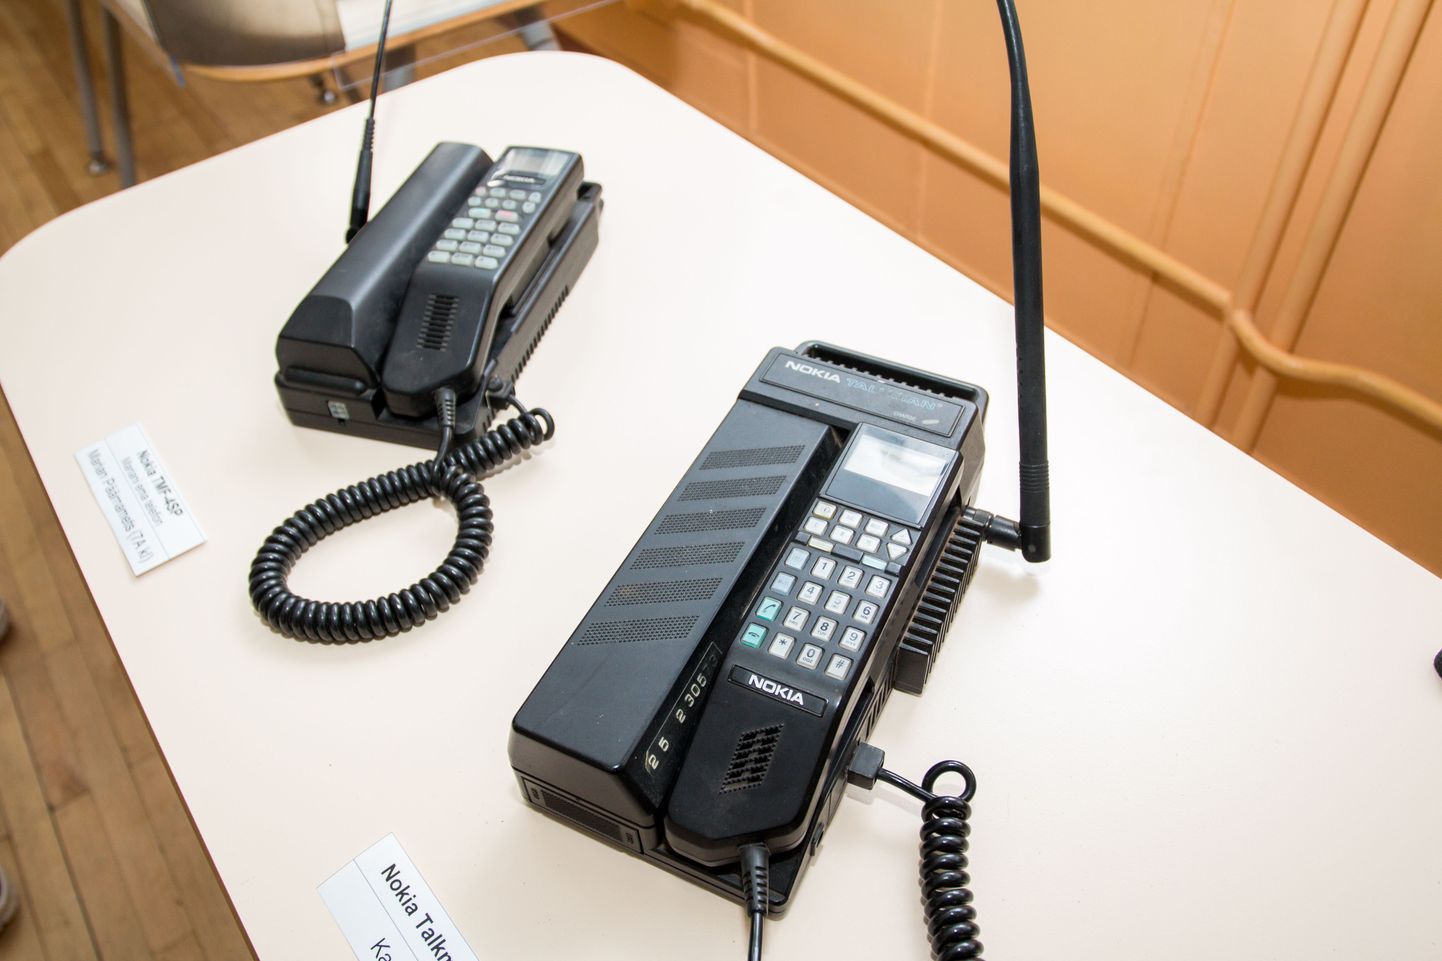 Pärnu Rääma põhikoolis on välja pandud nutitelefonide eelkäijate näitus.